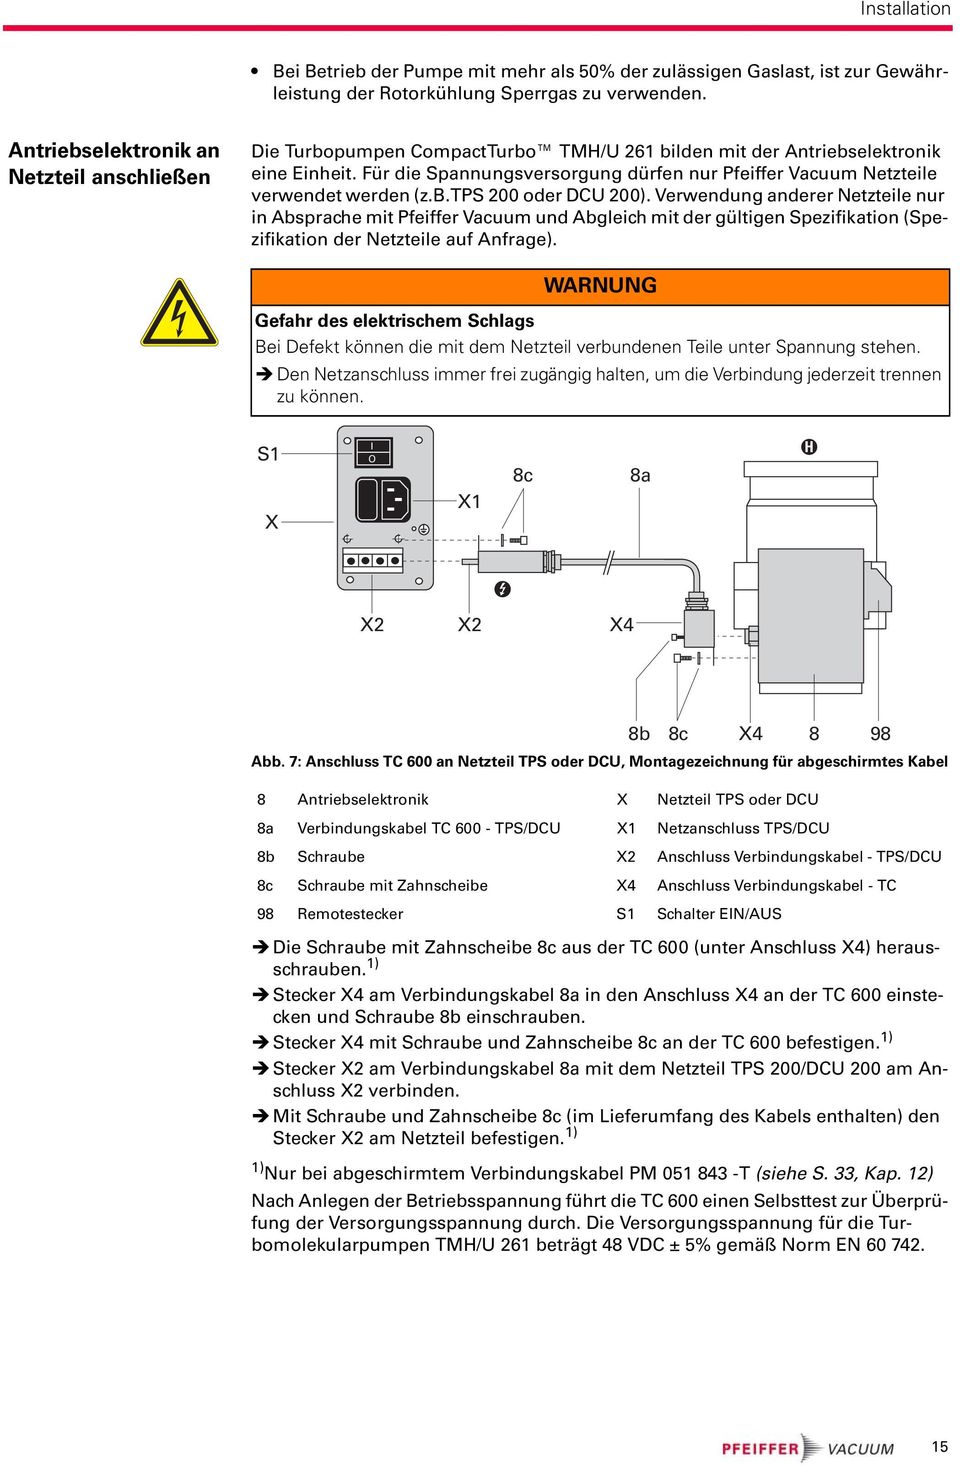 Für die Spannungsversorgung dürfen nur Pfeiffer Vacuum Netzteile verwendet werden (z.b.tps 200 oder DCU 200).